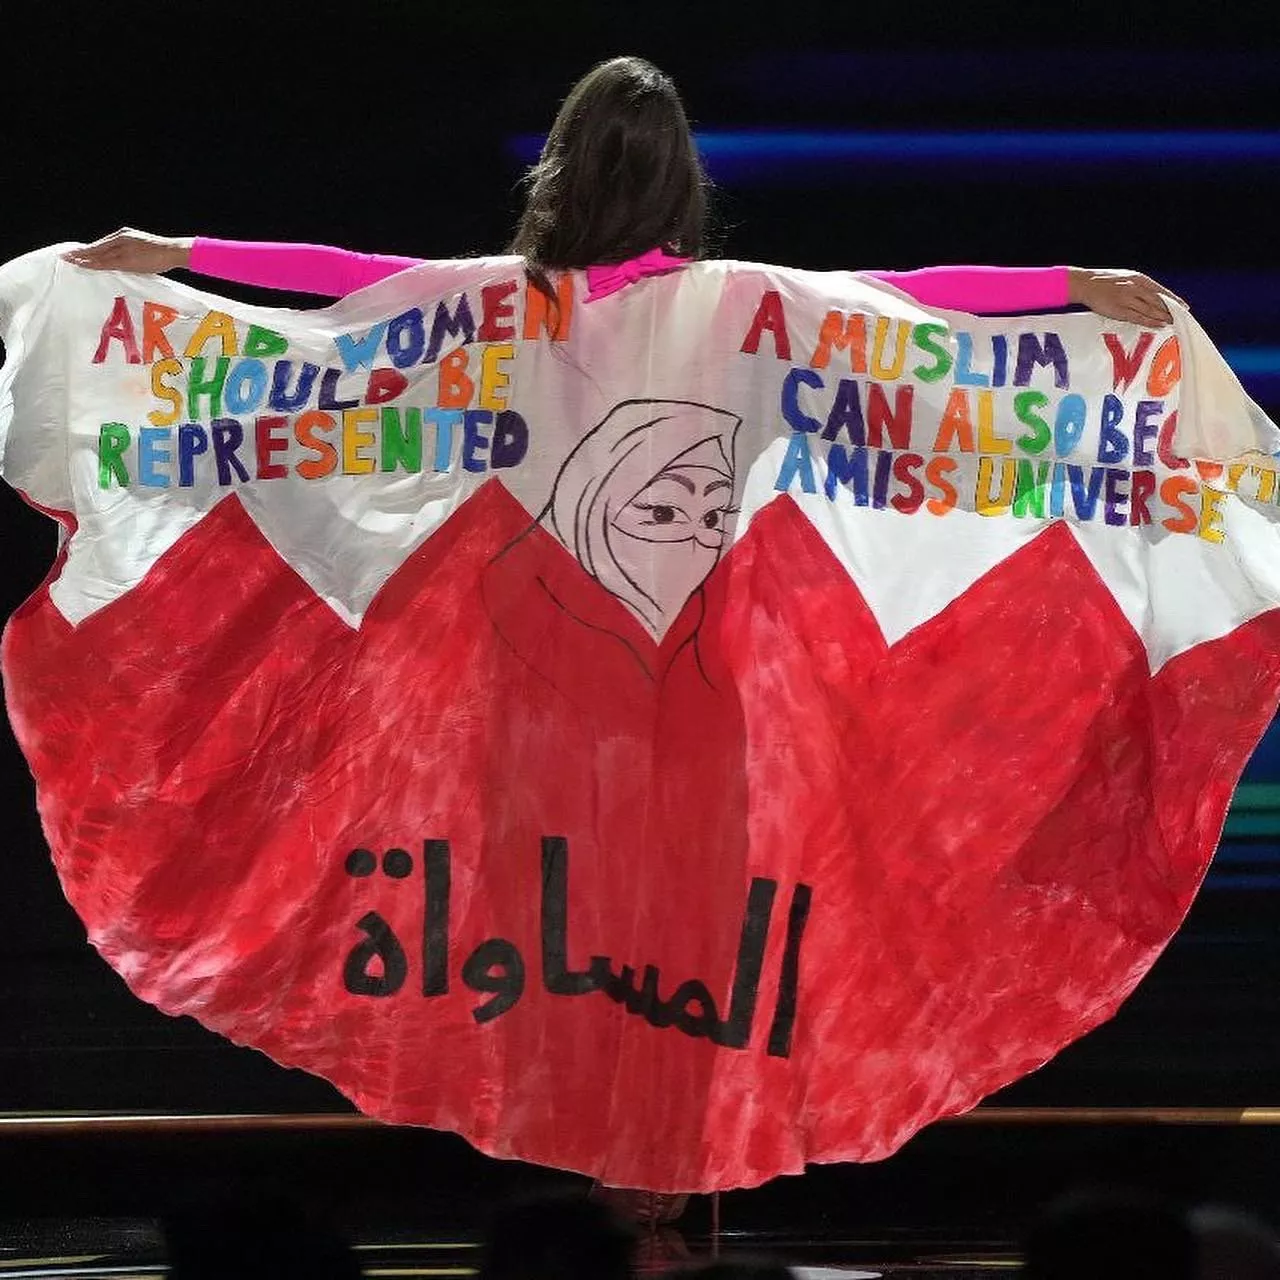 ملكة جمال البحرين ايفلين عبدالله خليفة توجّه رسالة للمرأة العربية وتطالب بالمساواة في ملكة جمال الكون 2022